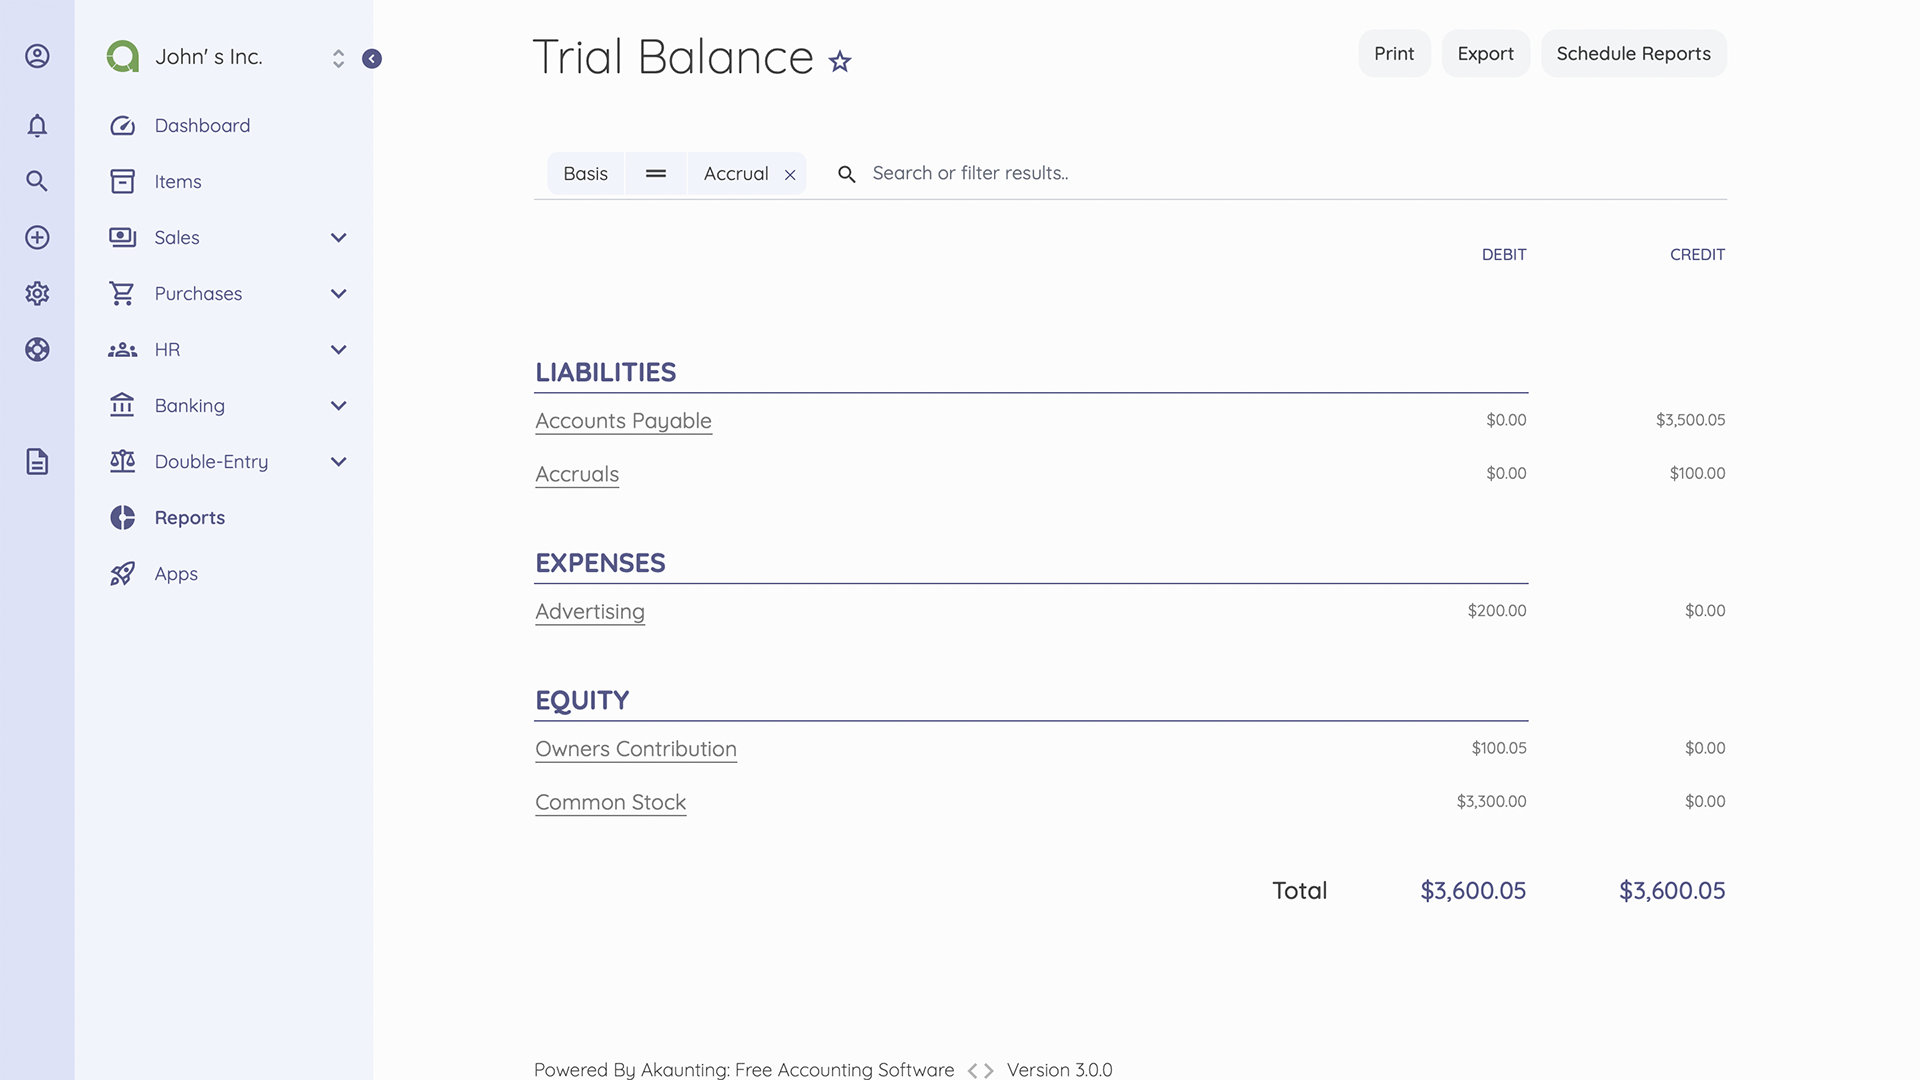 Balance Sheet & Trial Balance